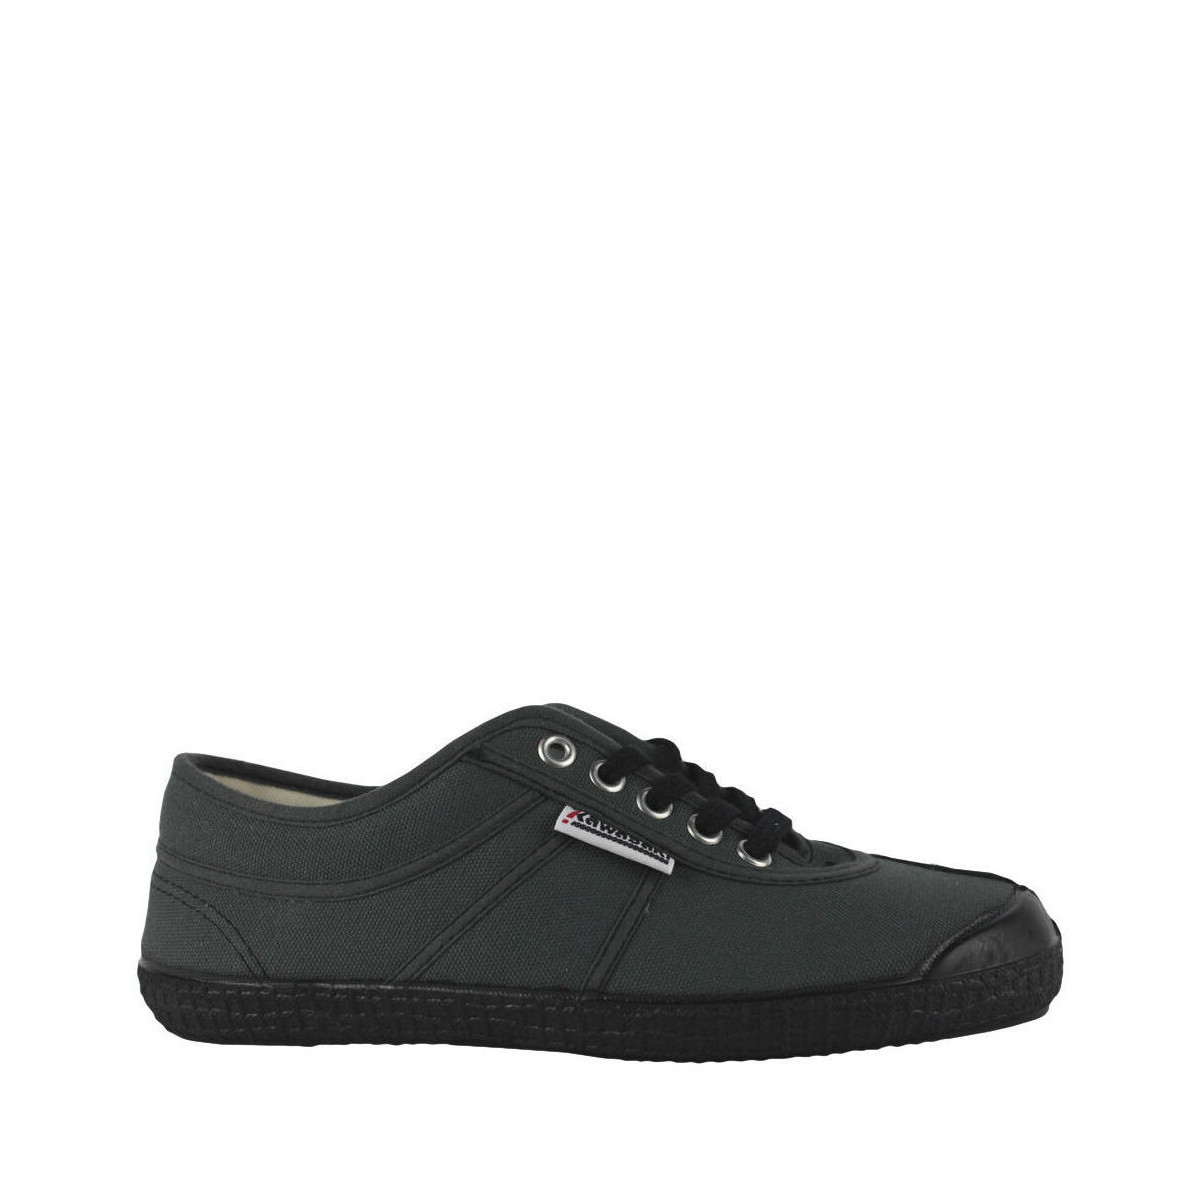 Sapatos Homem Sapatilhas Kawasaki Basic 23 Canvas Shoe K23B 644 Black/Grey Preto